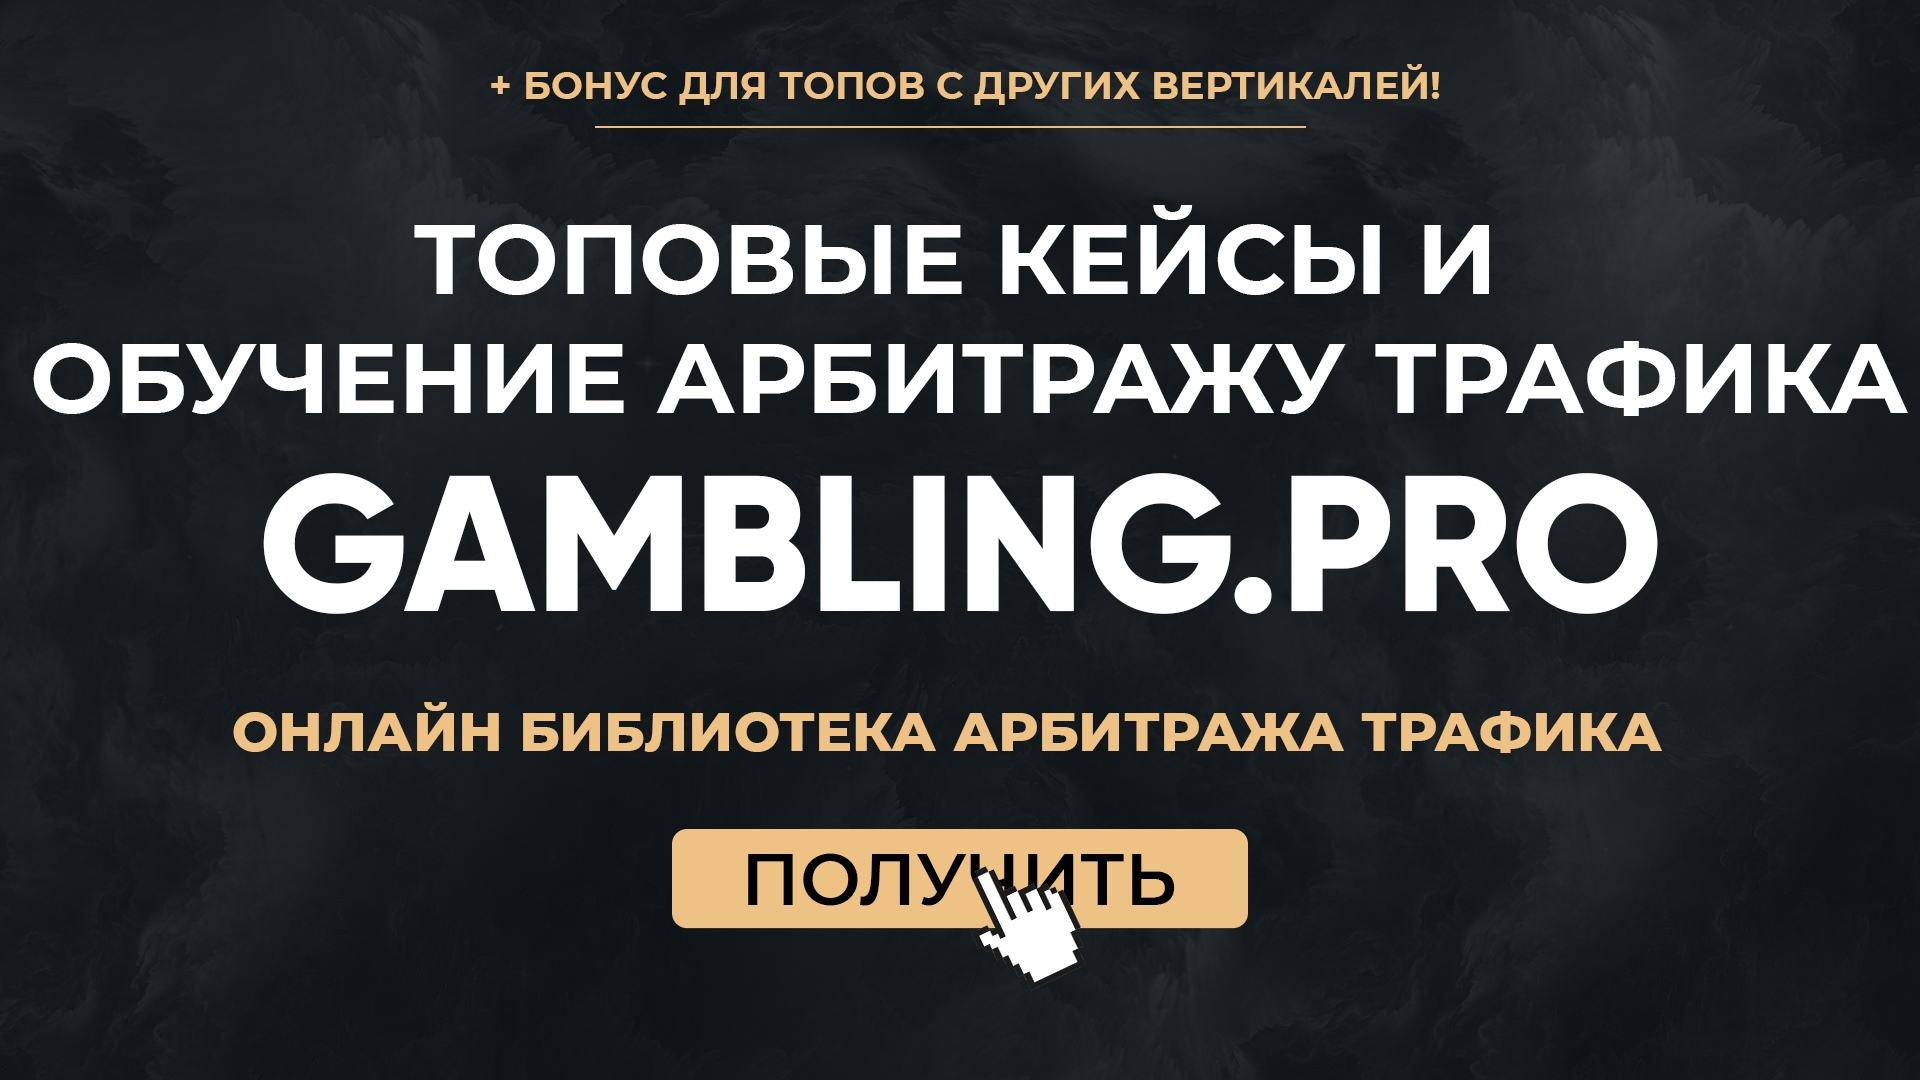 gambling-pro-obuchenie-po-rabote-s-fejsbukom-2020-jpg.1362